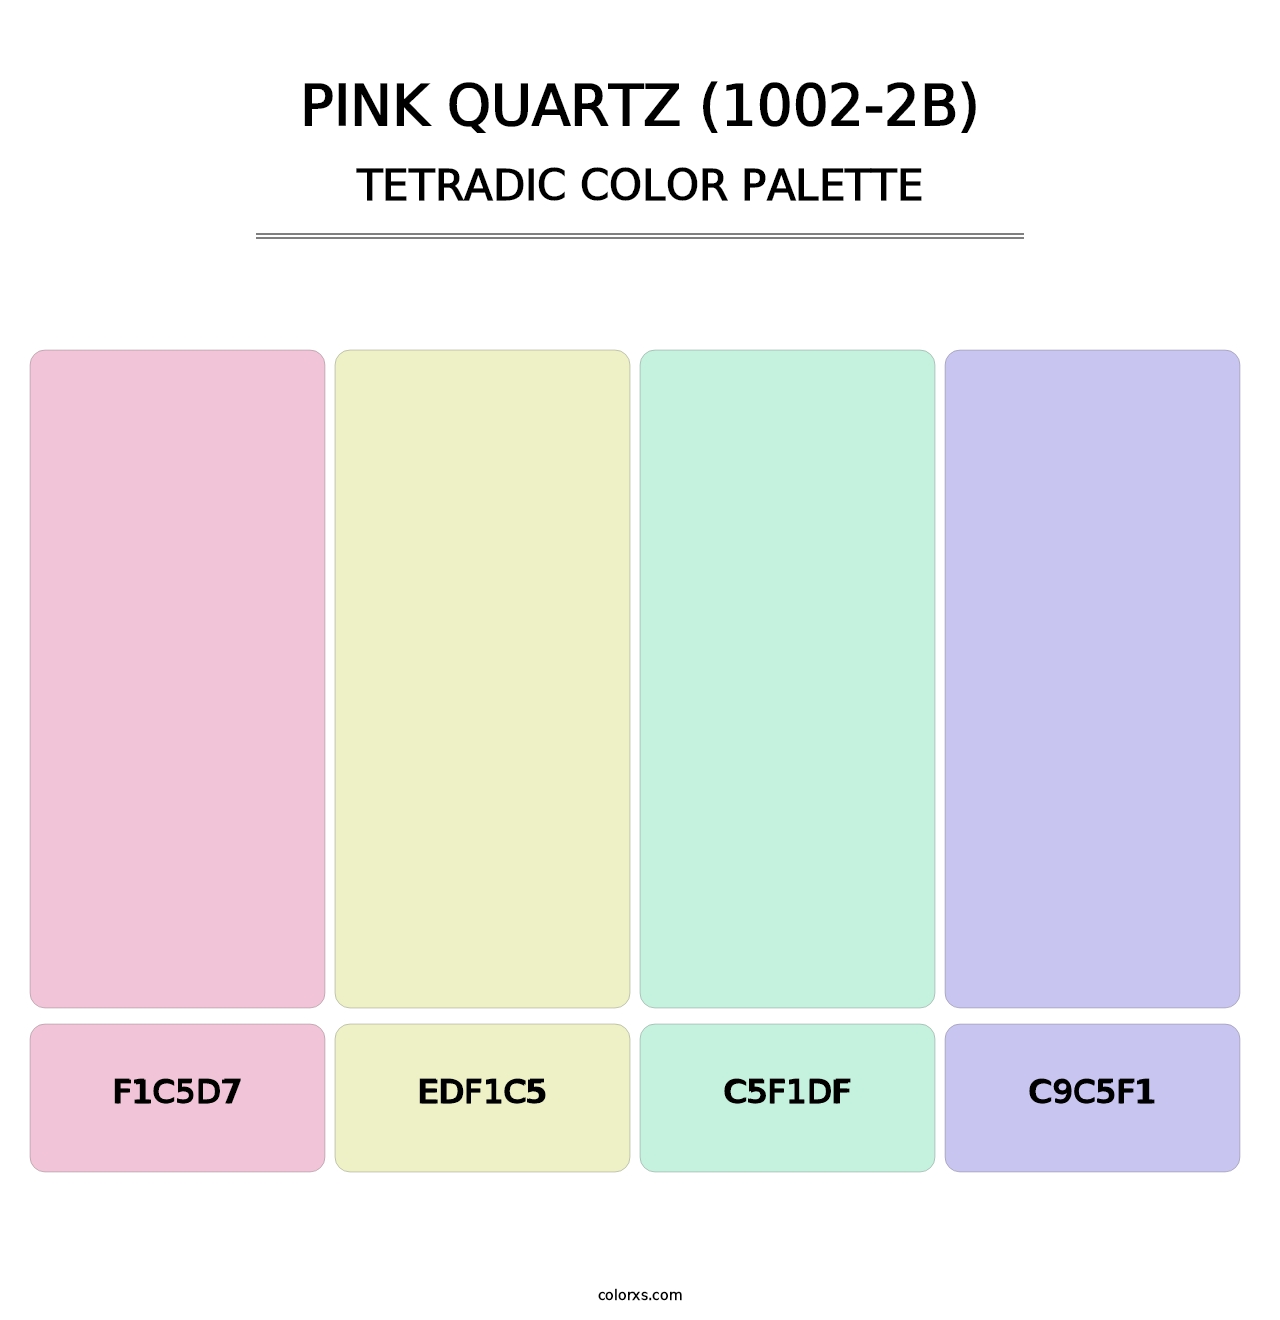 Pink Quartz (1002-2B) - Tetradic Color Palette